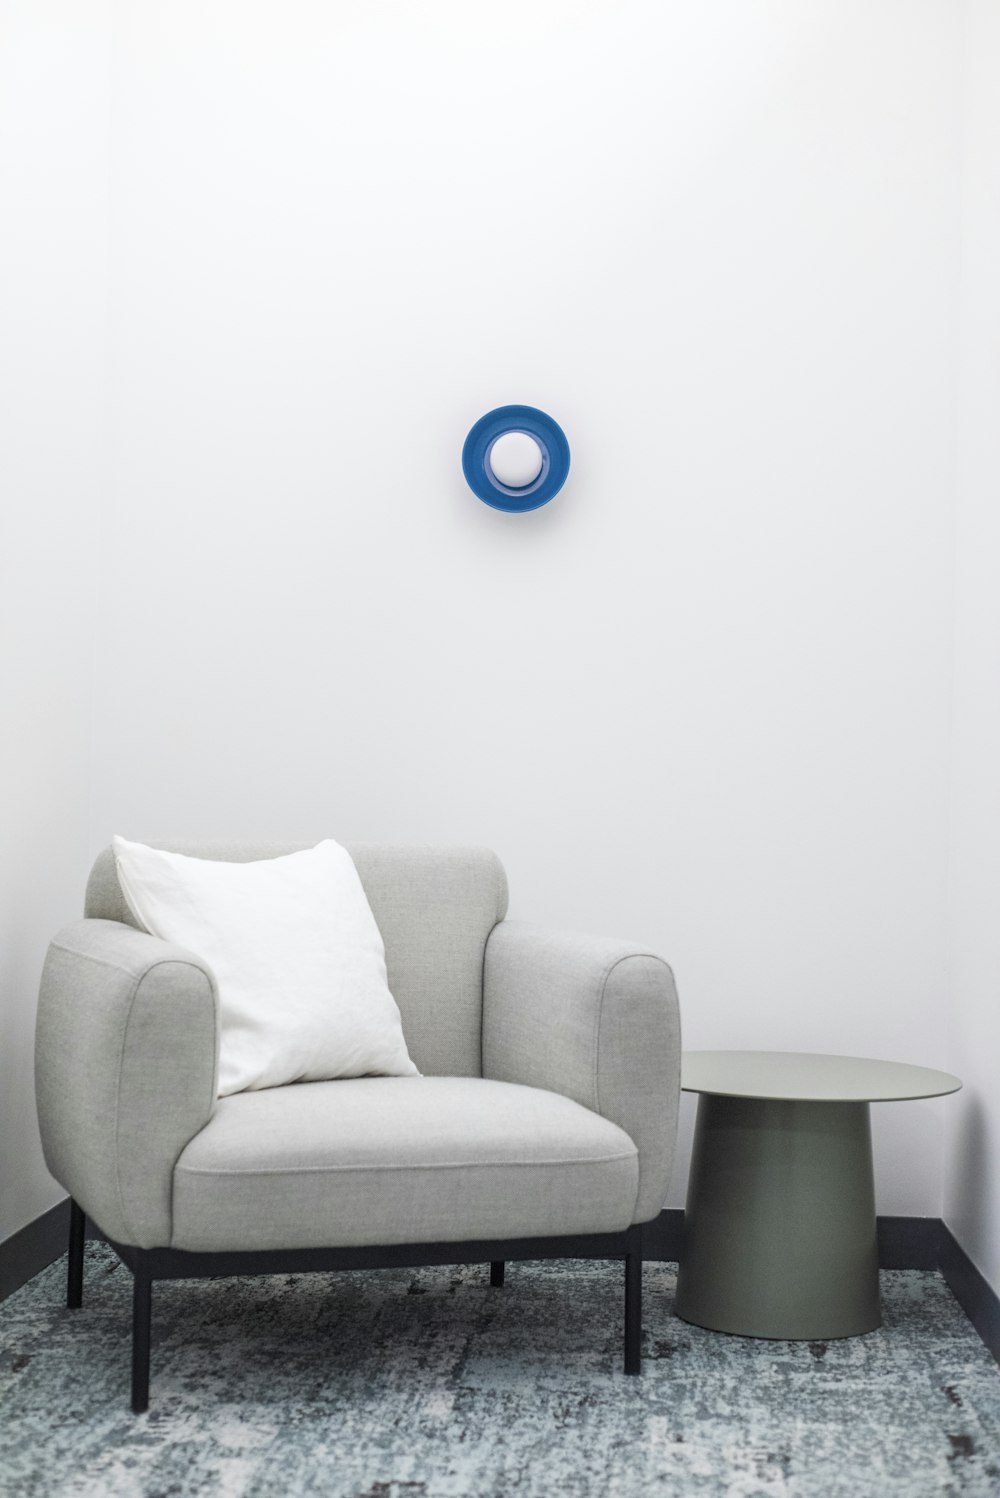 bola redonda azul sobre sofá gris